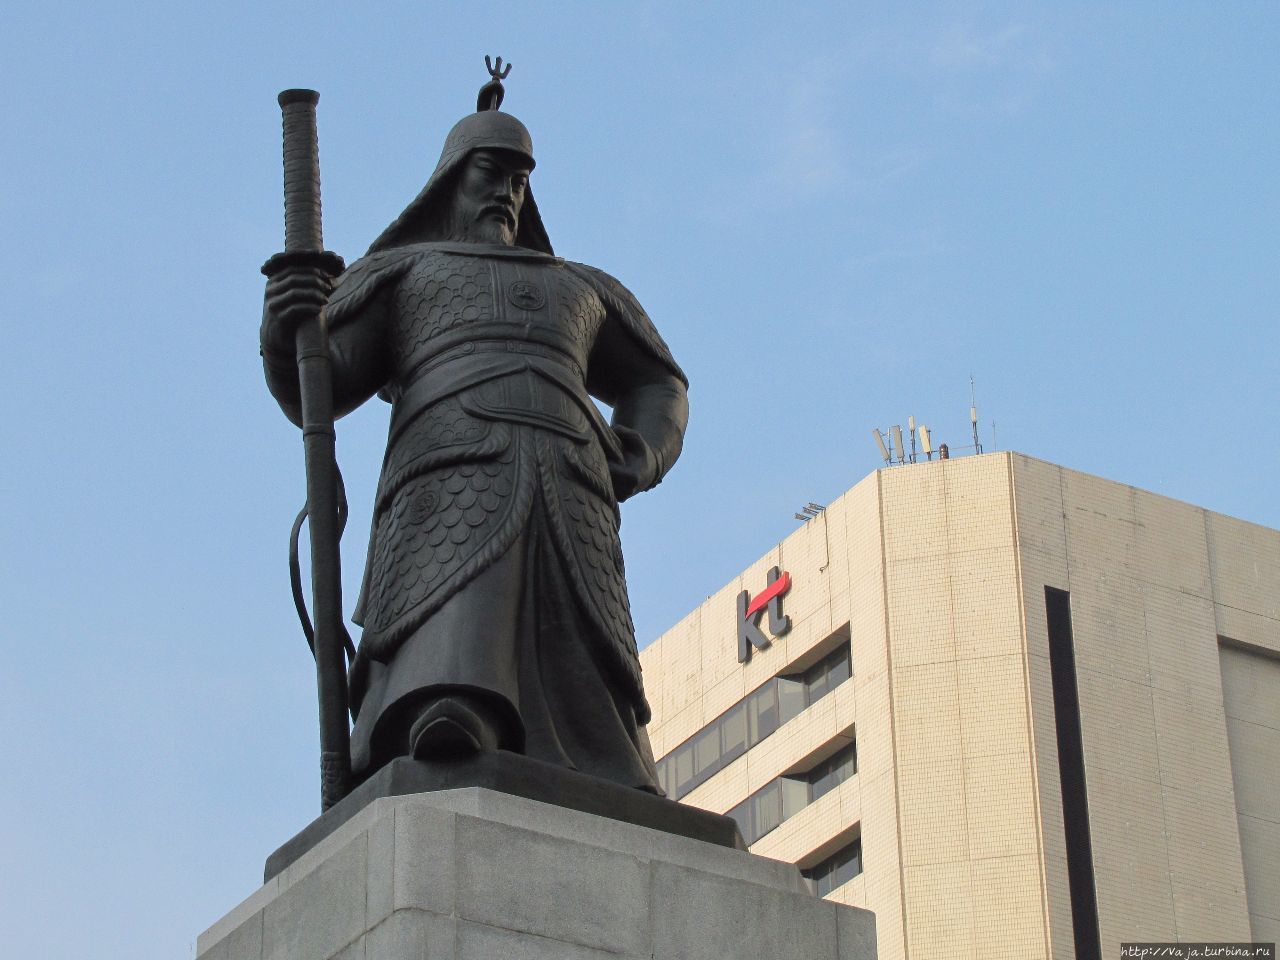 Адмирал Ли Сунсин. Герой войны с Японией 1592-1598 годах Сеул, Республика Корея